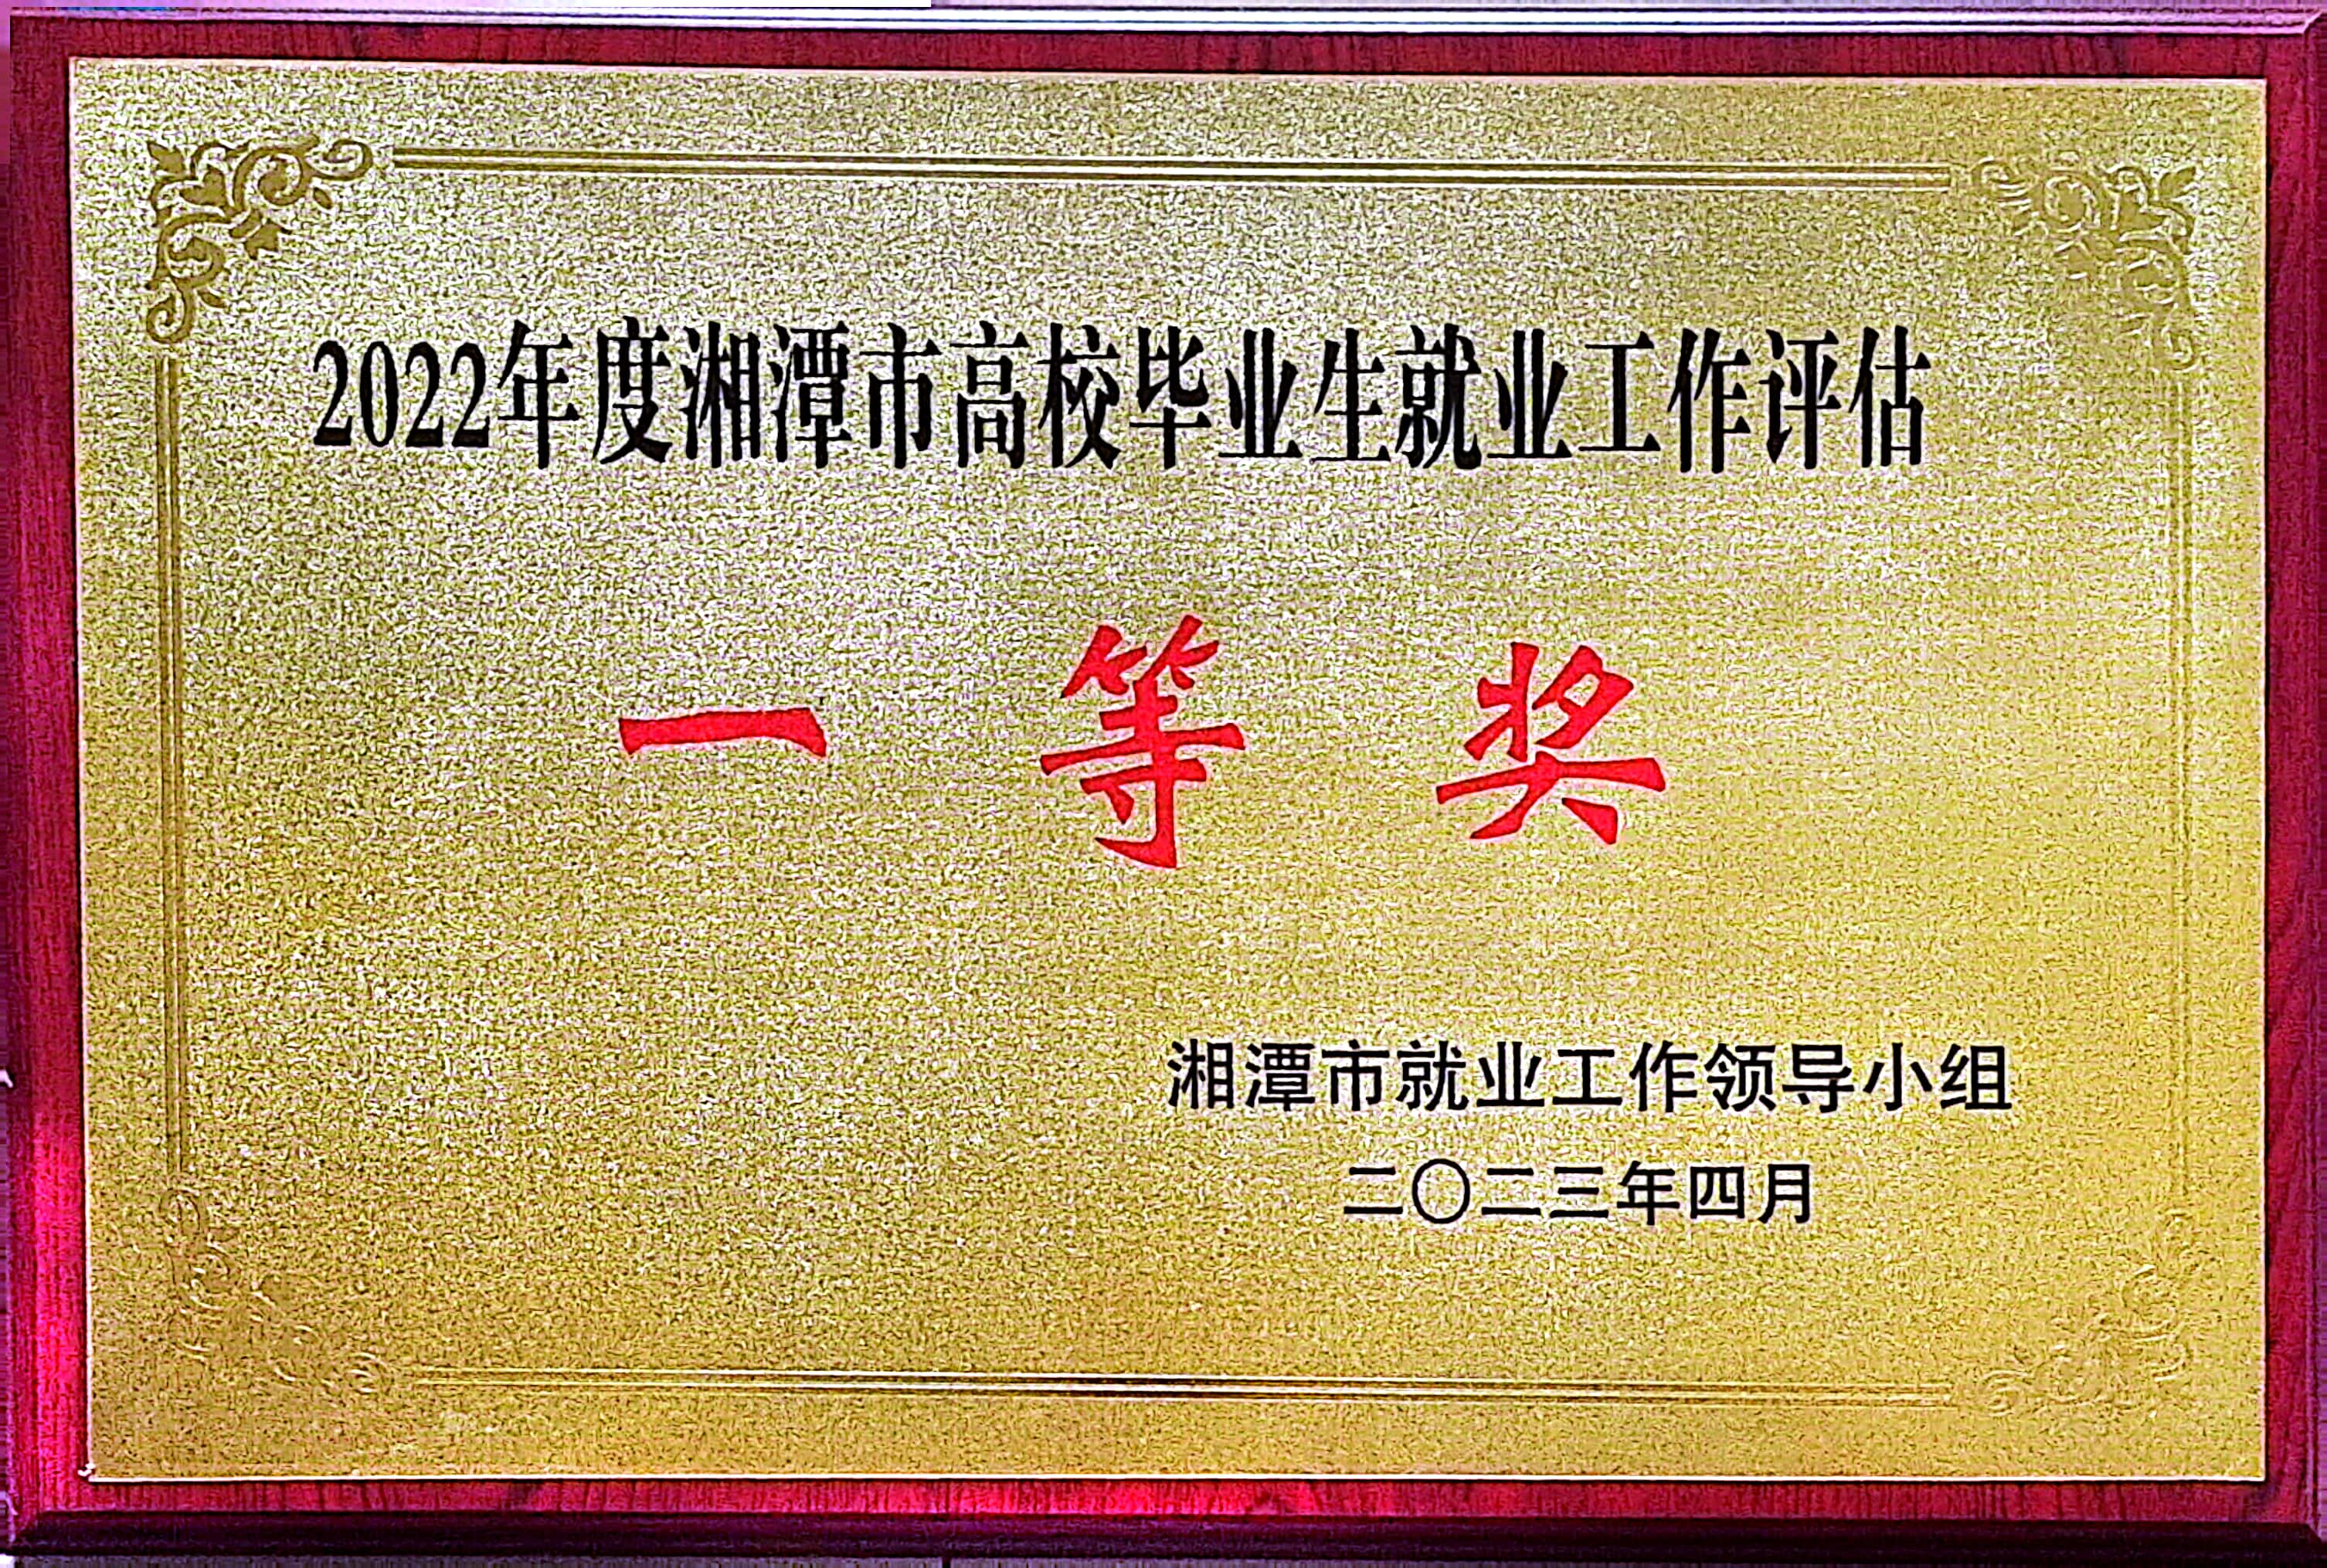 2022年度湘潭市高校毕业生就业评估工作一等奖